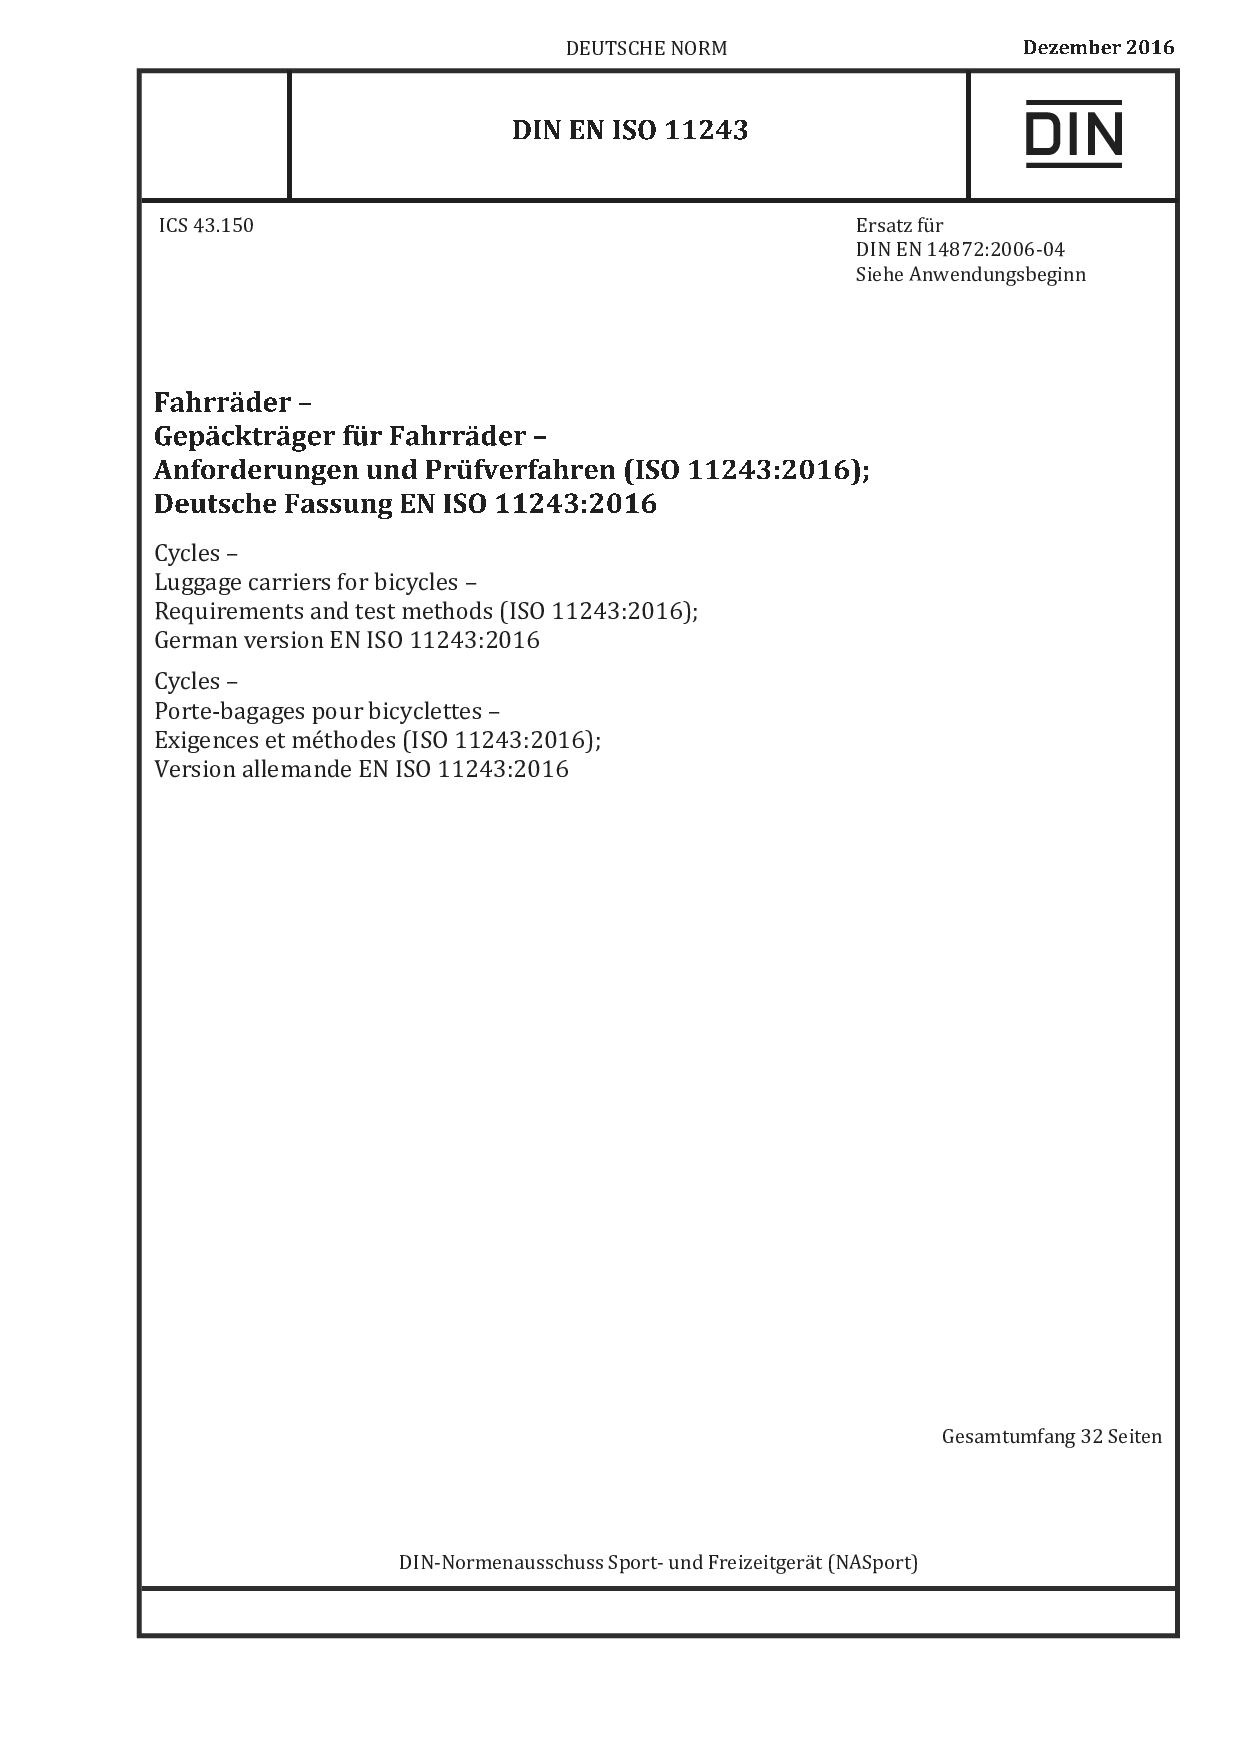 DIN EN ISO 11243:2016-12